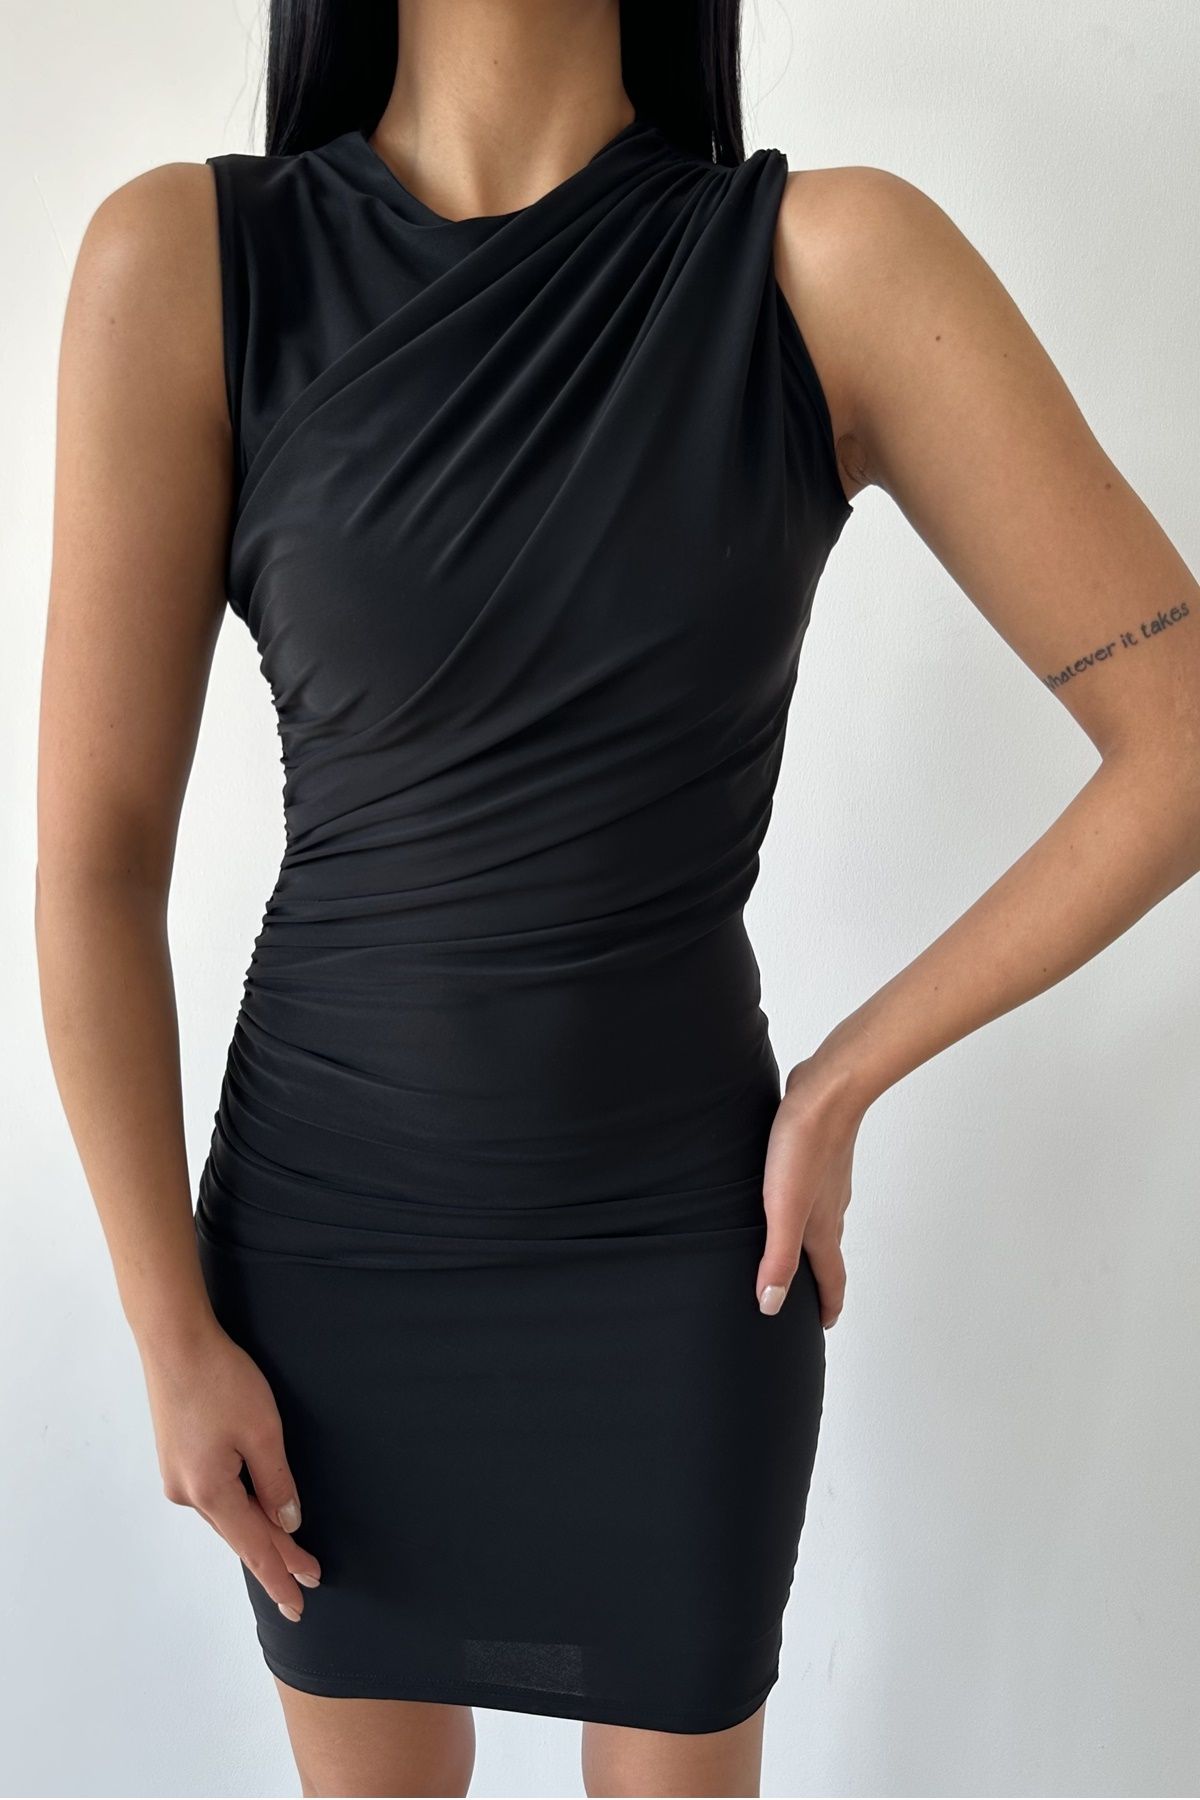 WOMAN VISION Kadın Siyah Sandy Kumaş Çapraz Yaka ve Büzgü Tasarım Kolsuz Mini Elbise 8000